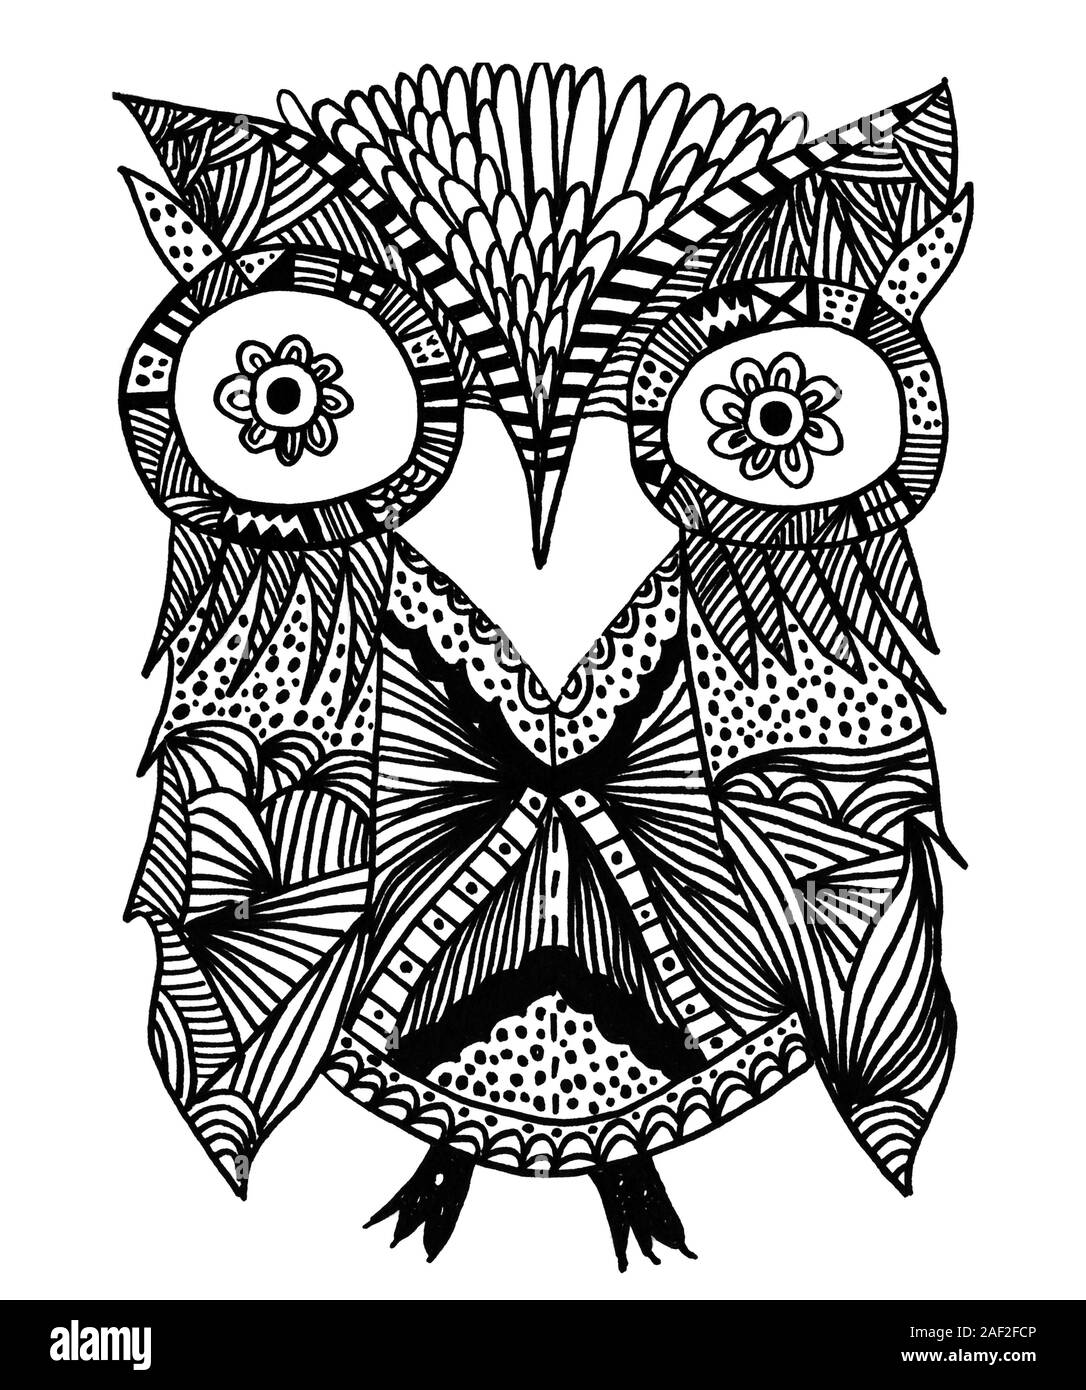 Carino owlet dipinto di rivestimento. Abstract bird illustration design Foto Stock